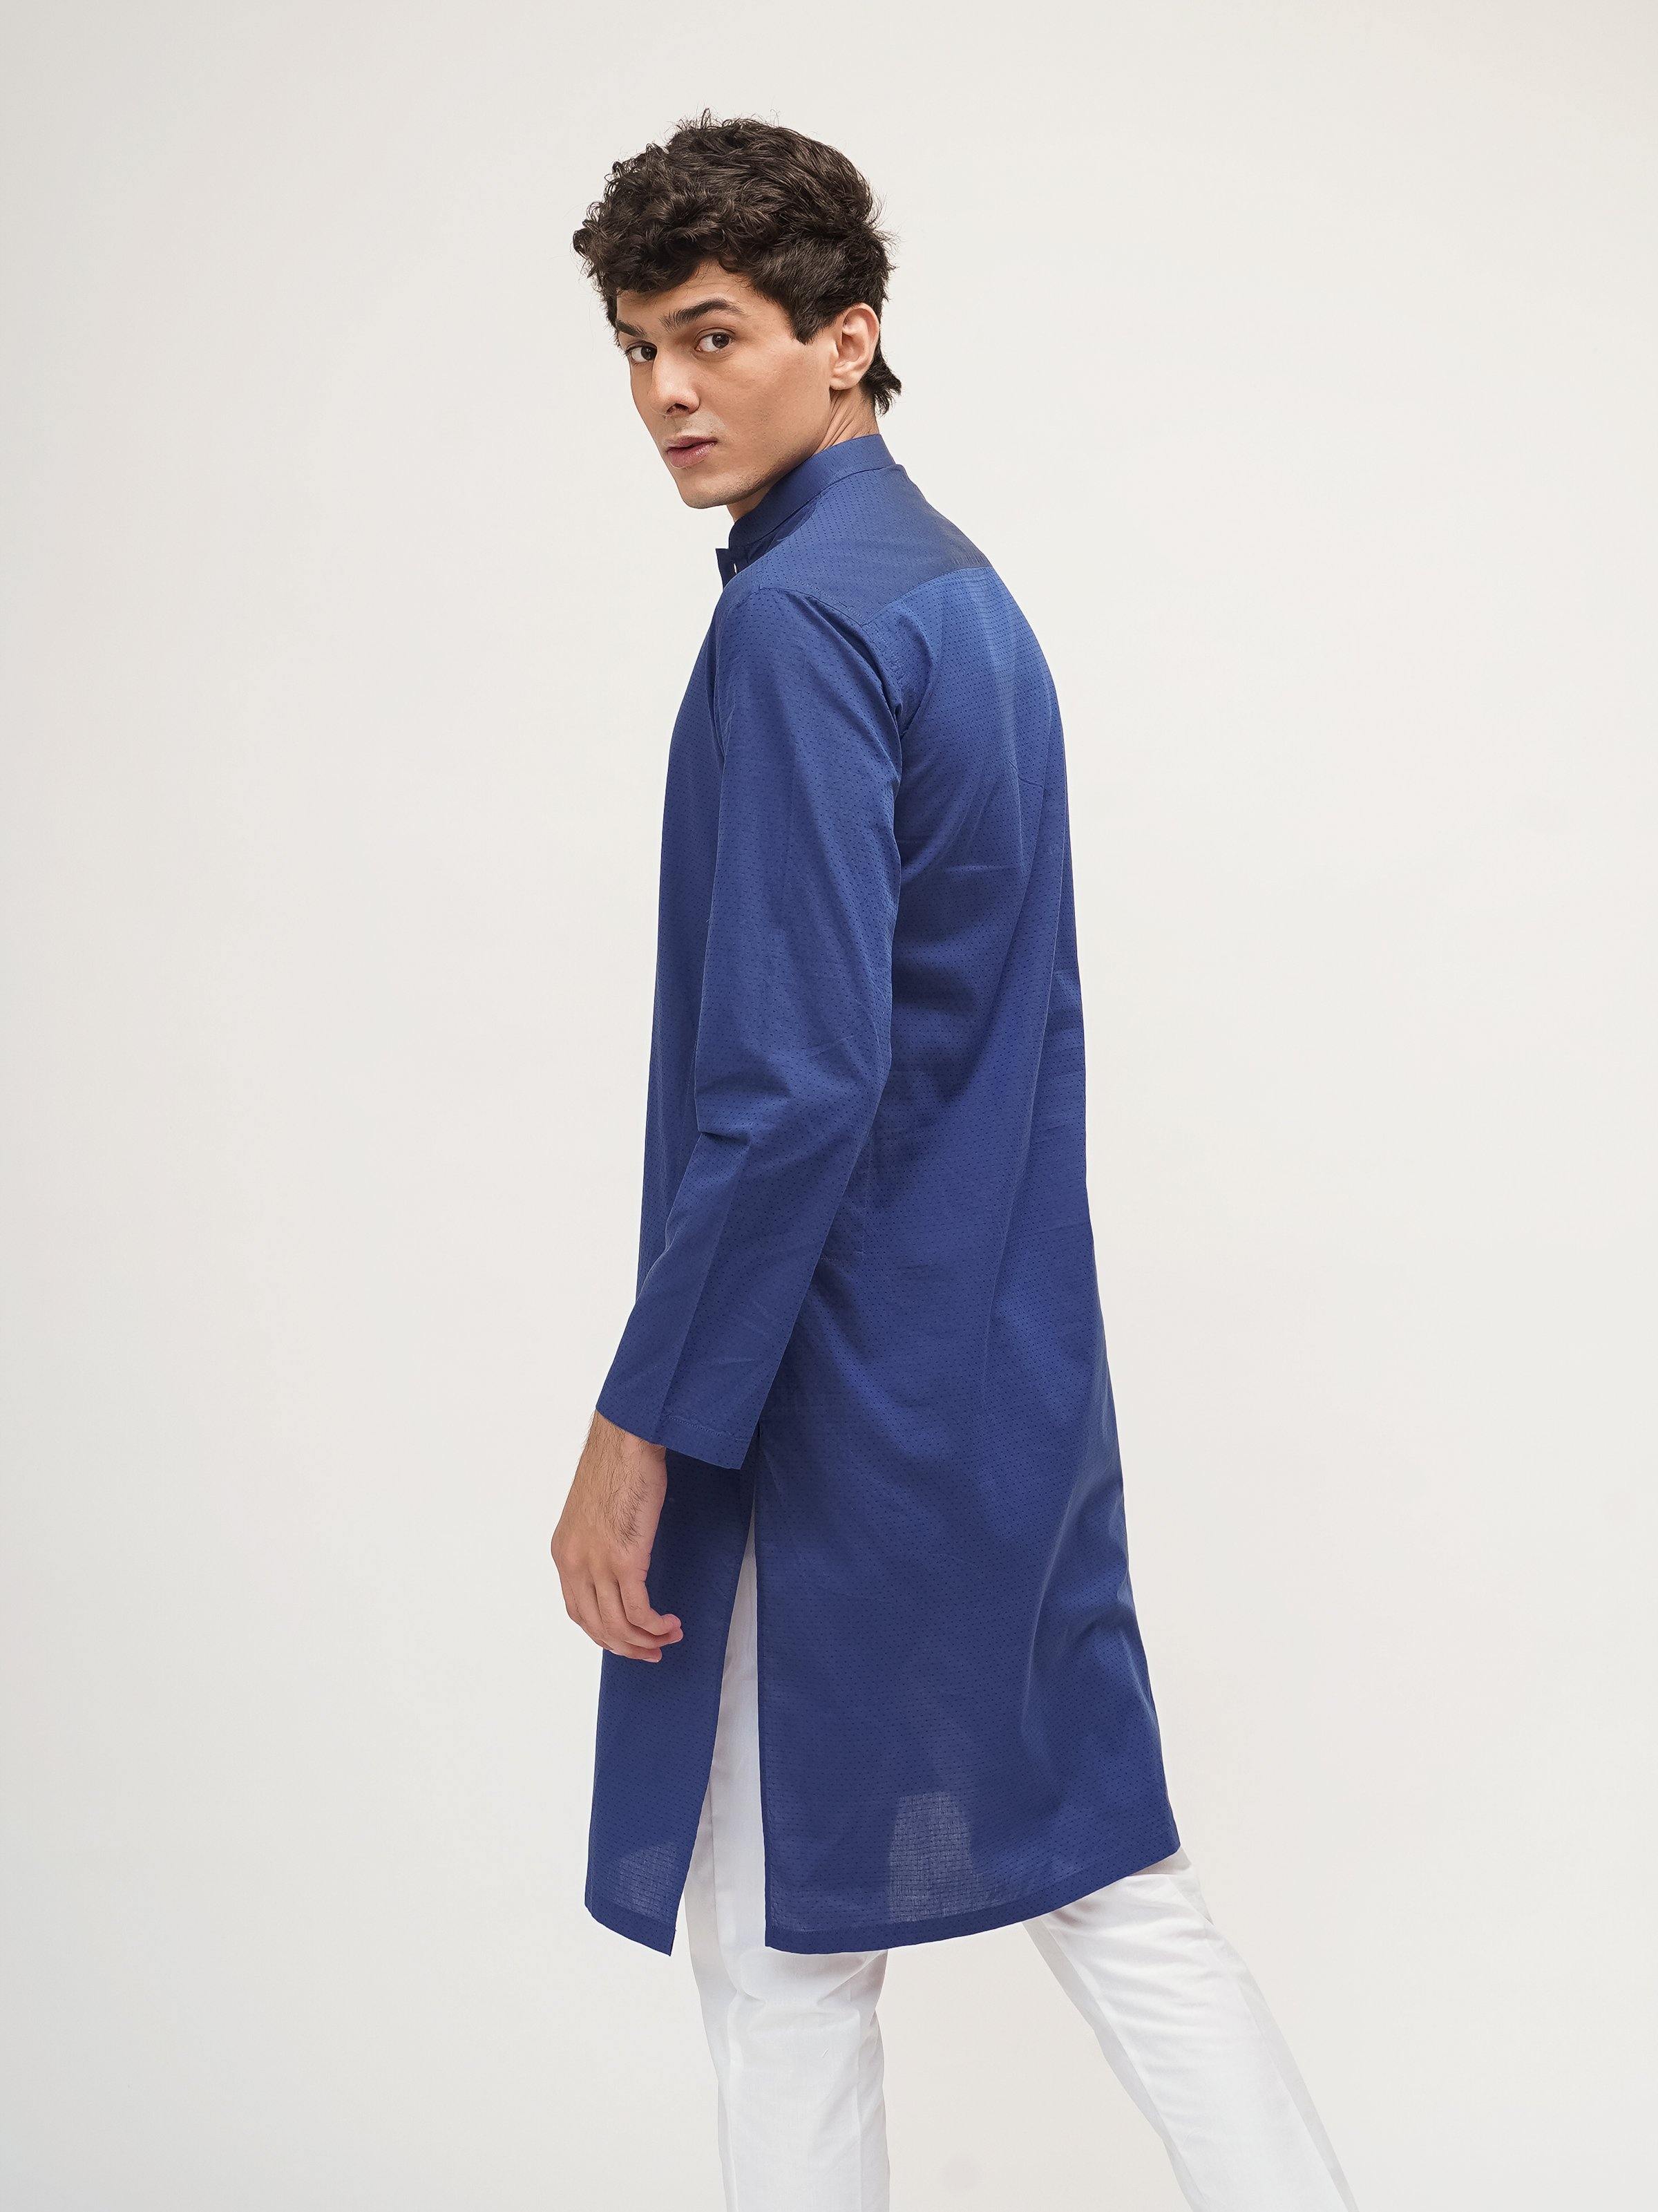 KURTA BAN COLLAR BLUE - Surplus Clothing